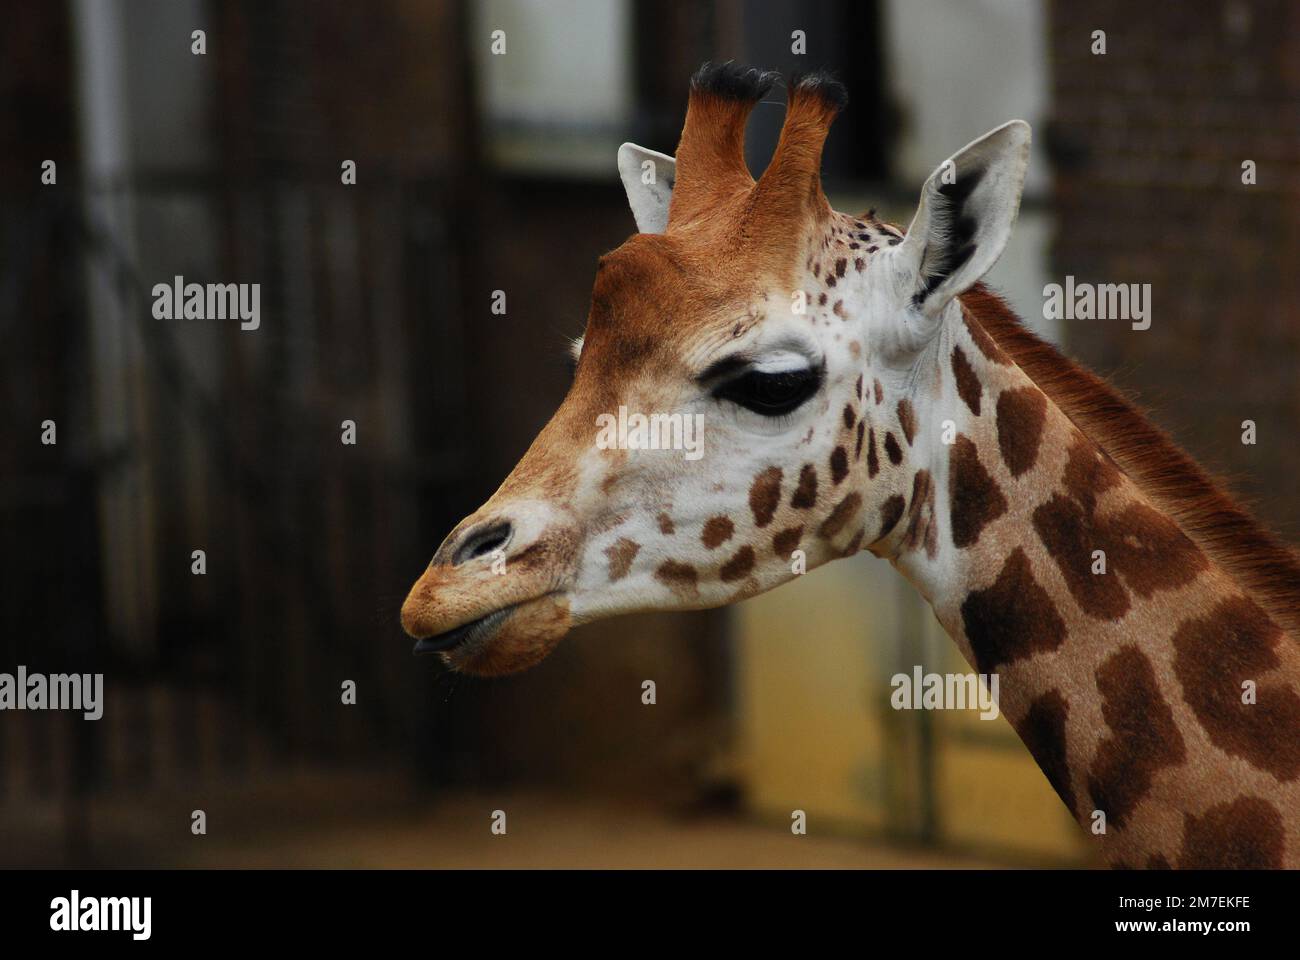 Gros plan de la tête et du cou d'une jeune girafe de Rothschild, également connue sous le nom de girafe Baringo ou ougandaise, l'une des sous-espèces de girafes les plus menacées. Banque D'Images